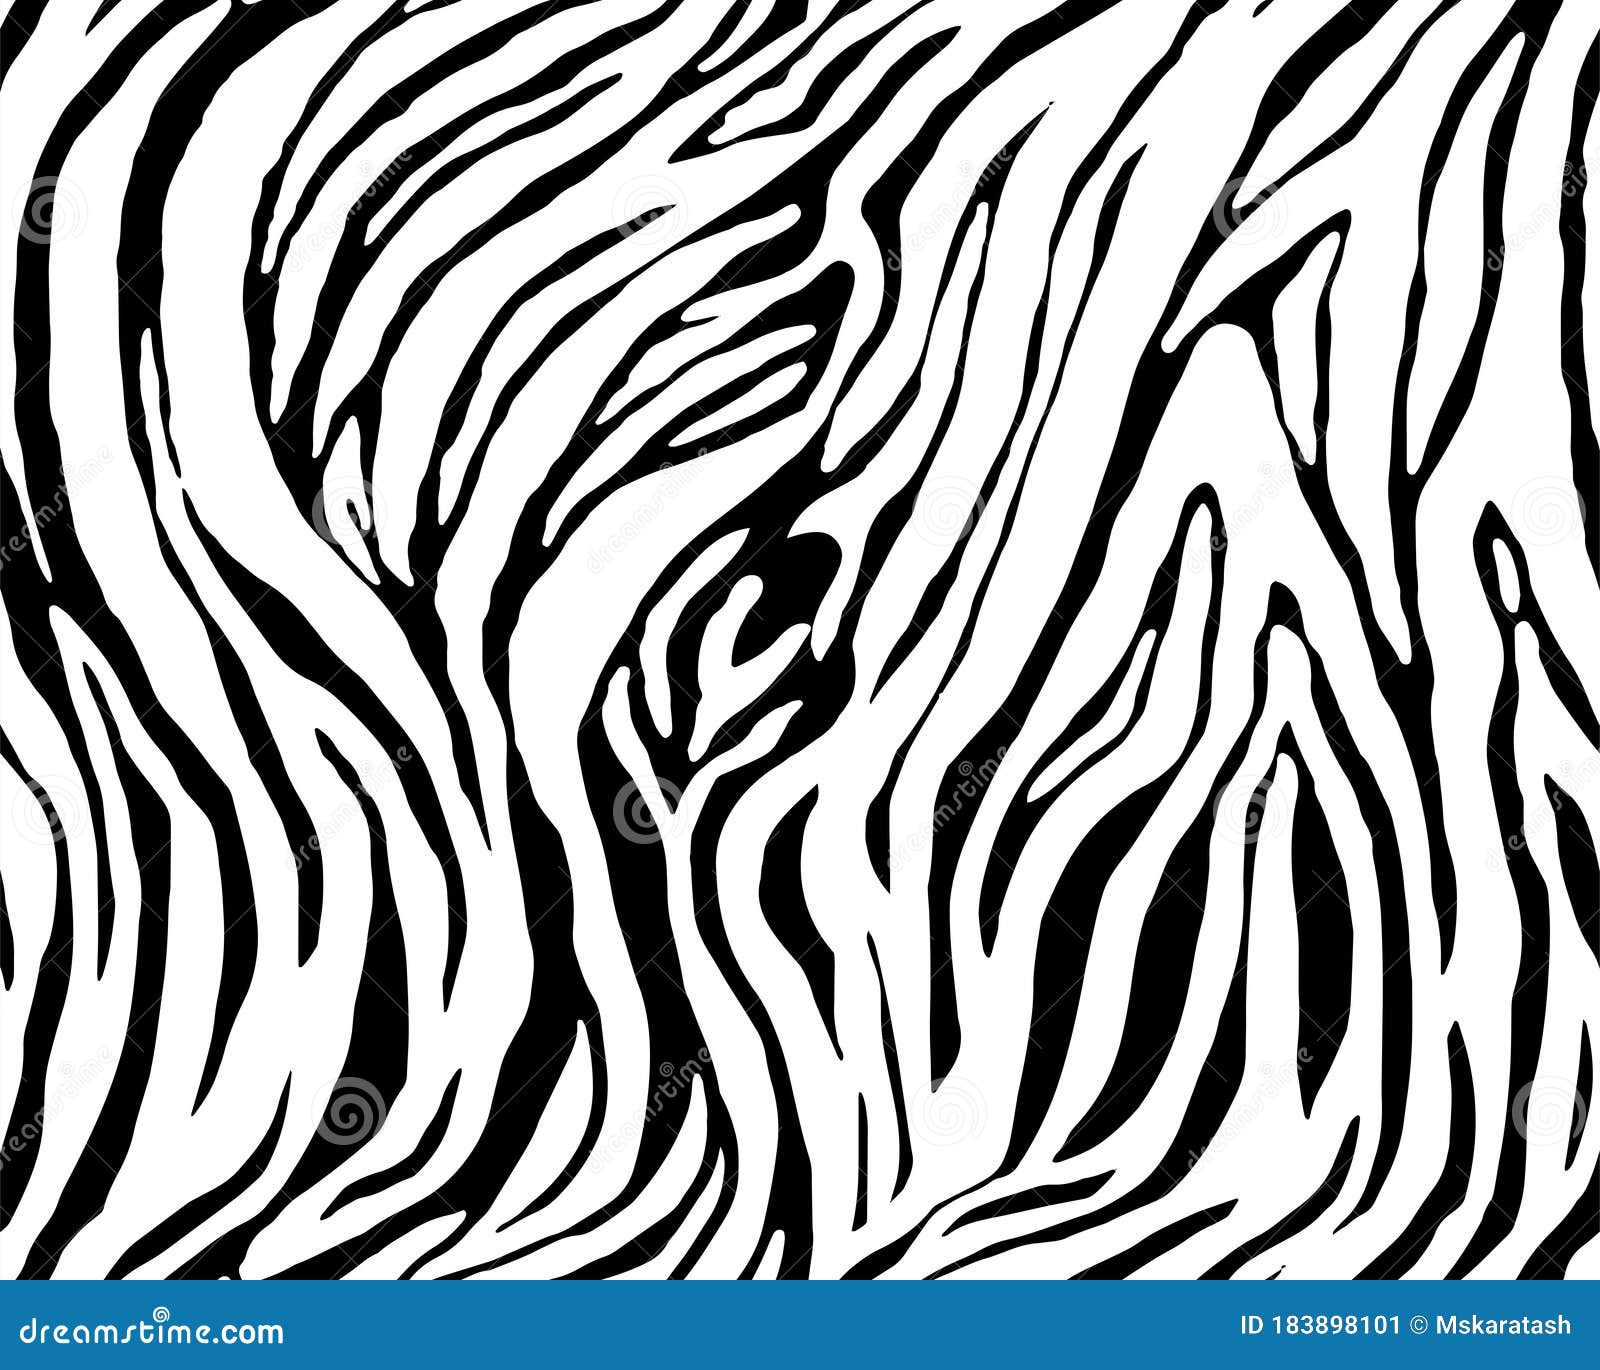 Tiger Stripes Clipart Black And White - josefinromskaugdrommen